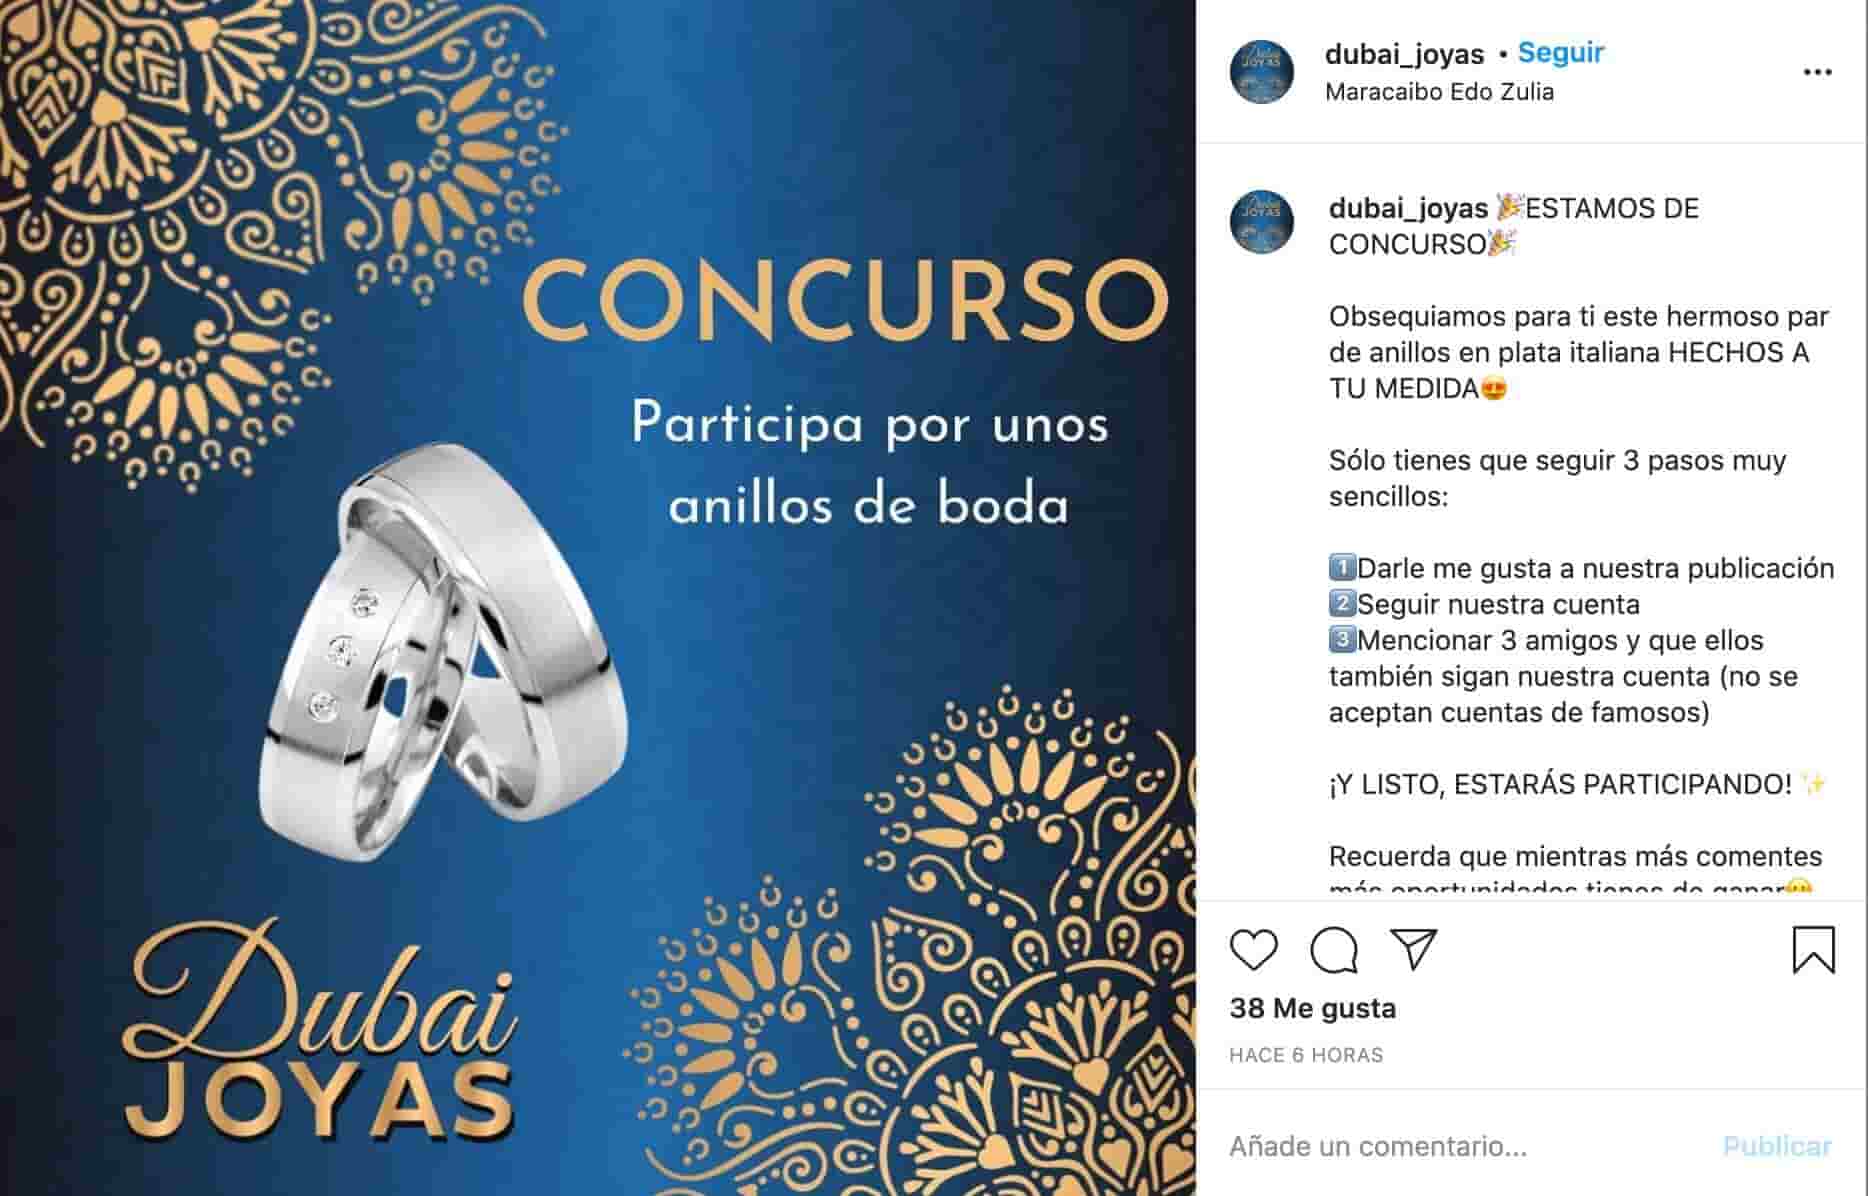 Ejemplo de concurso en Instagram: Dubai Joyas